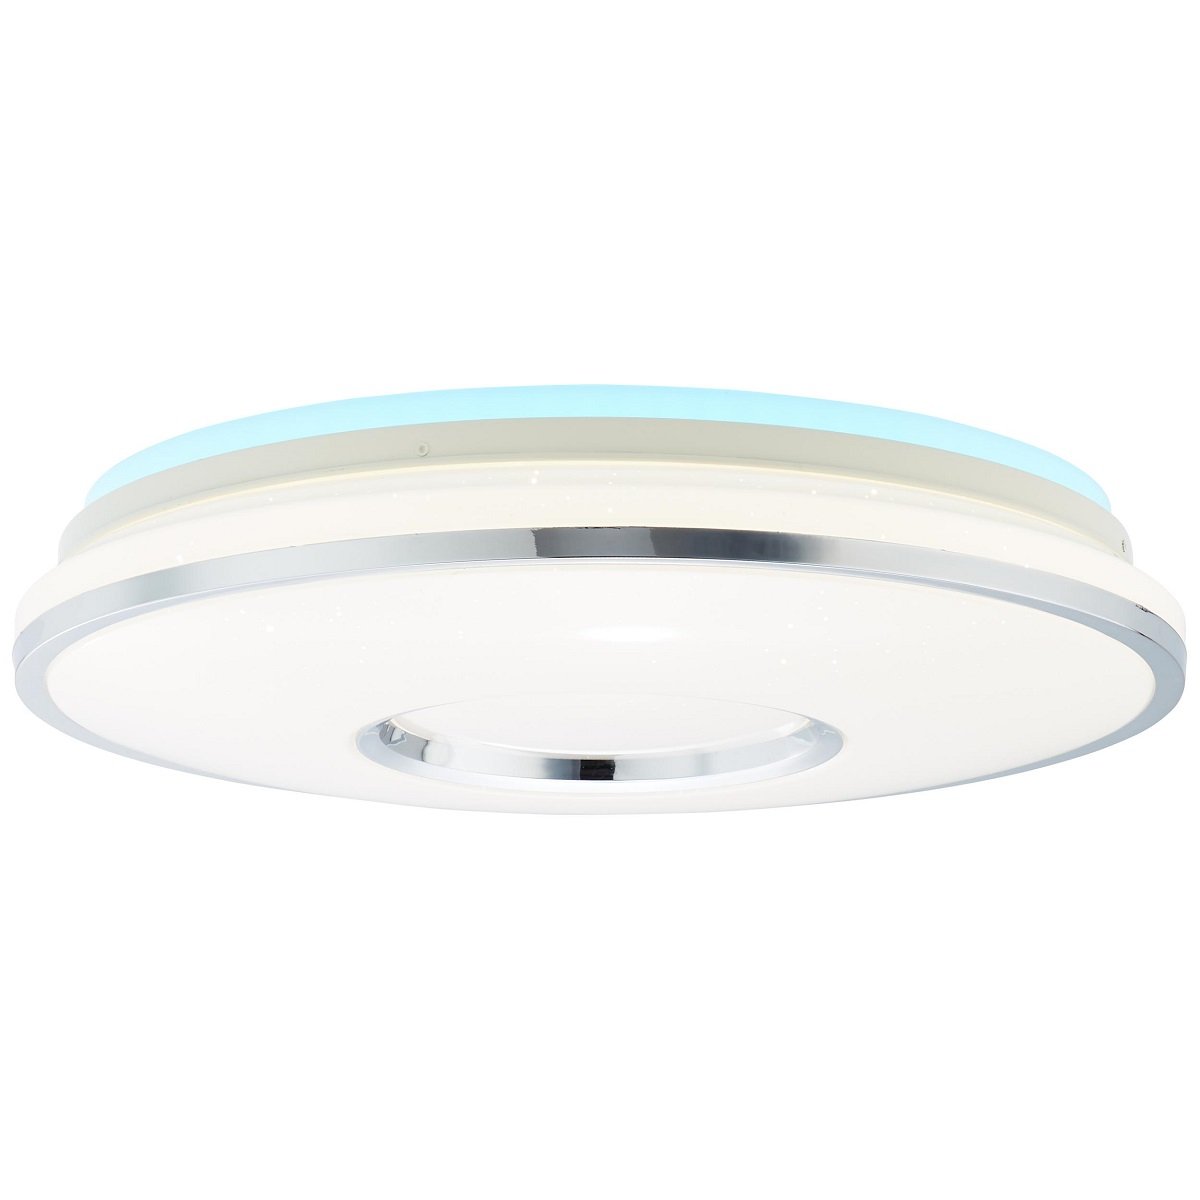 Visitation Lampen No. LED Deckenleuchte --> G97044-58 Leuchten weiß & im silber Leuchten kaufen 49cm Brilliant online